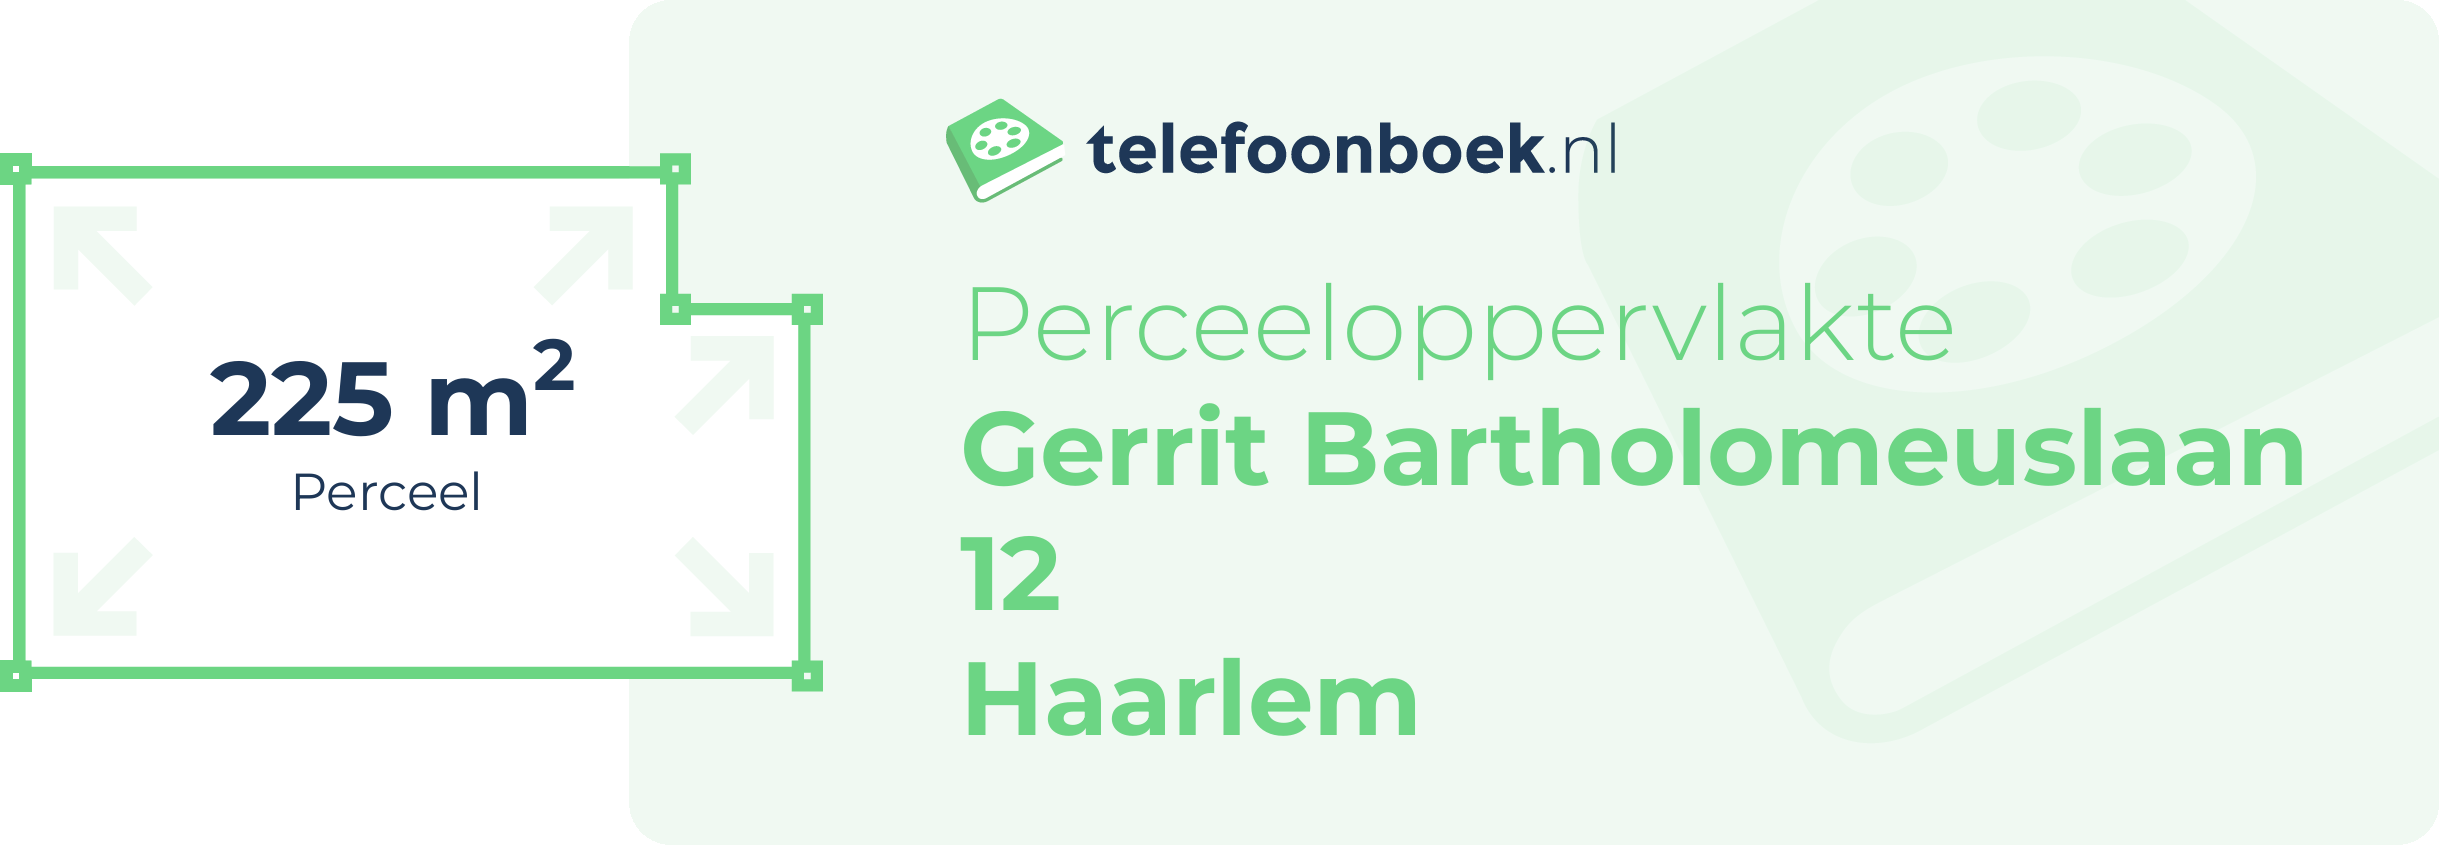 Perceeloppervlakte Gerrit Bartholomeuslaan 12 Haarlem